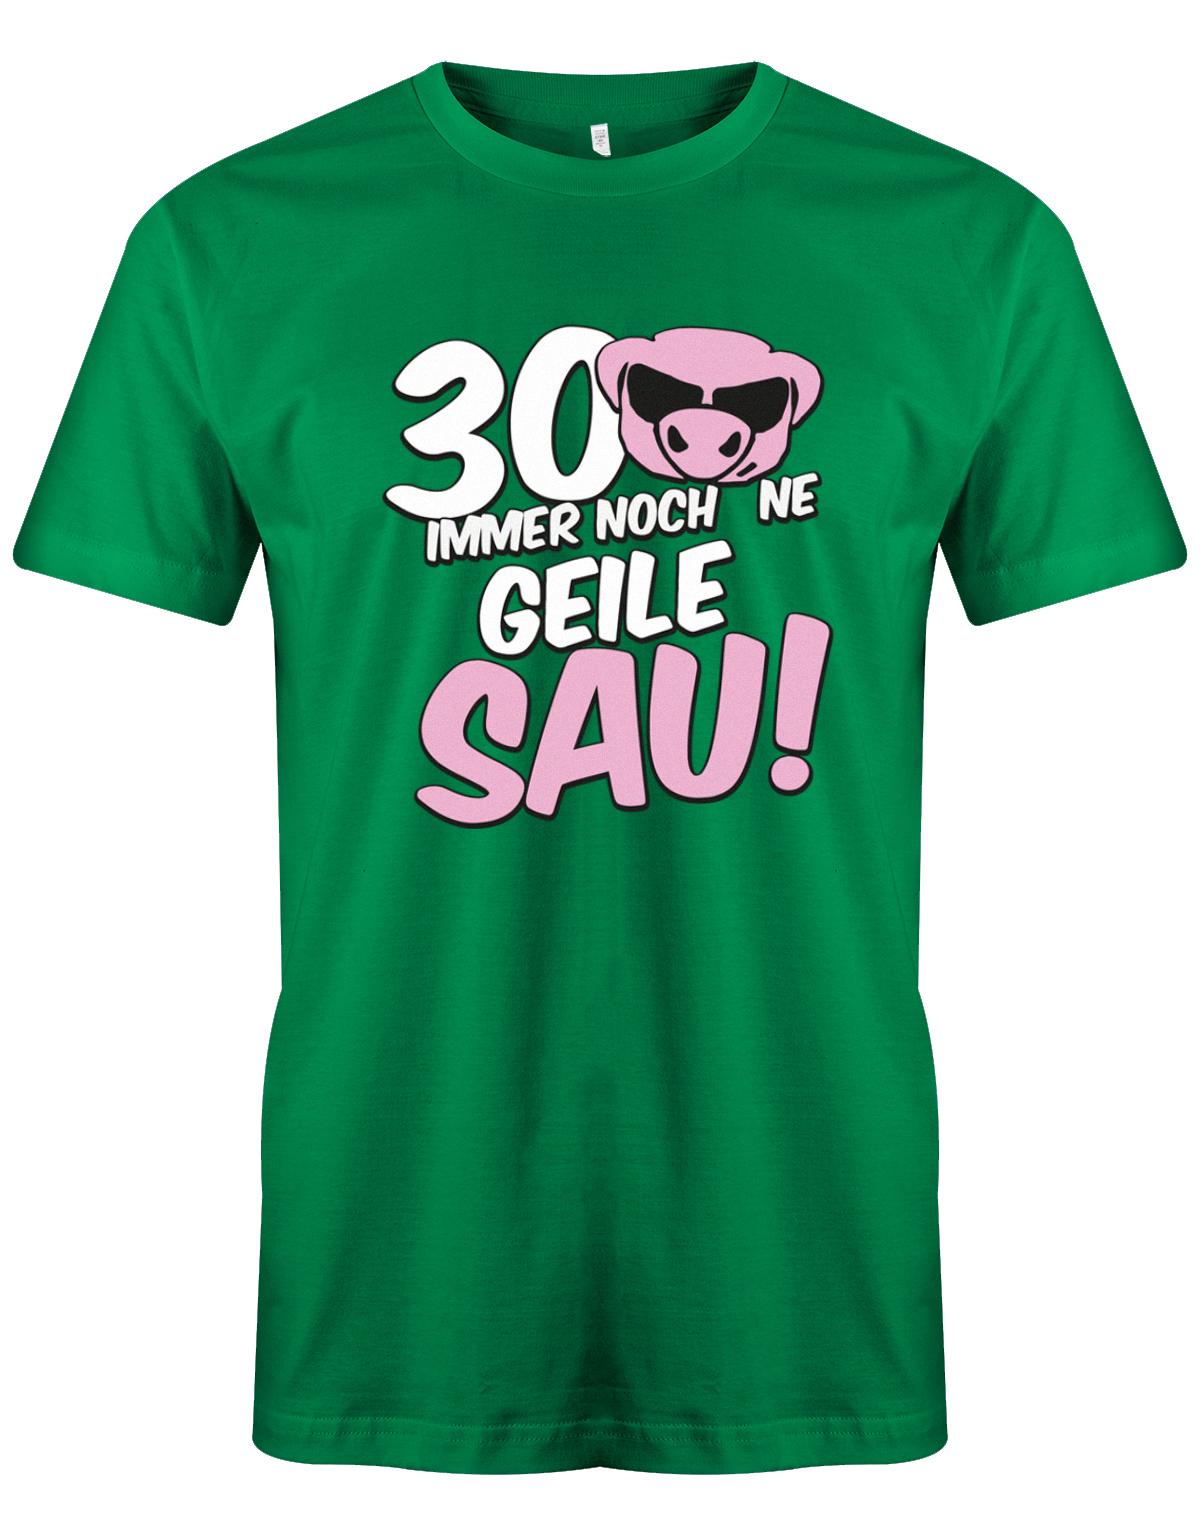 Lustiges T-Shirt zum 30 Geburtstag für den Mann Bedruckt mit 30 Immer noch 'ne geile Sau! Sau mit Sonnenbrille Grün